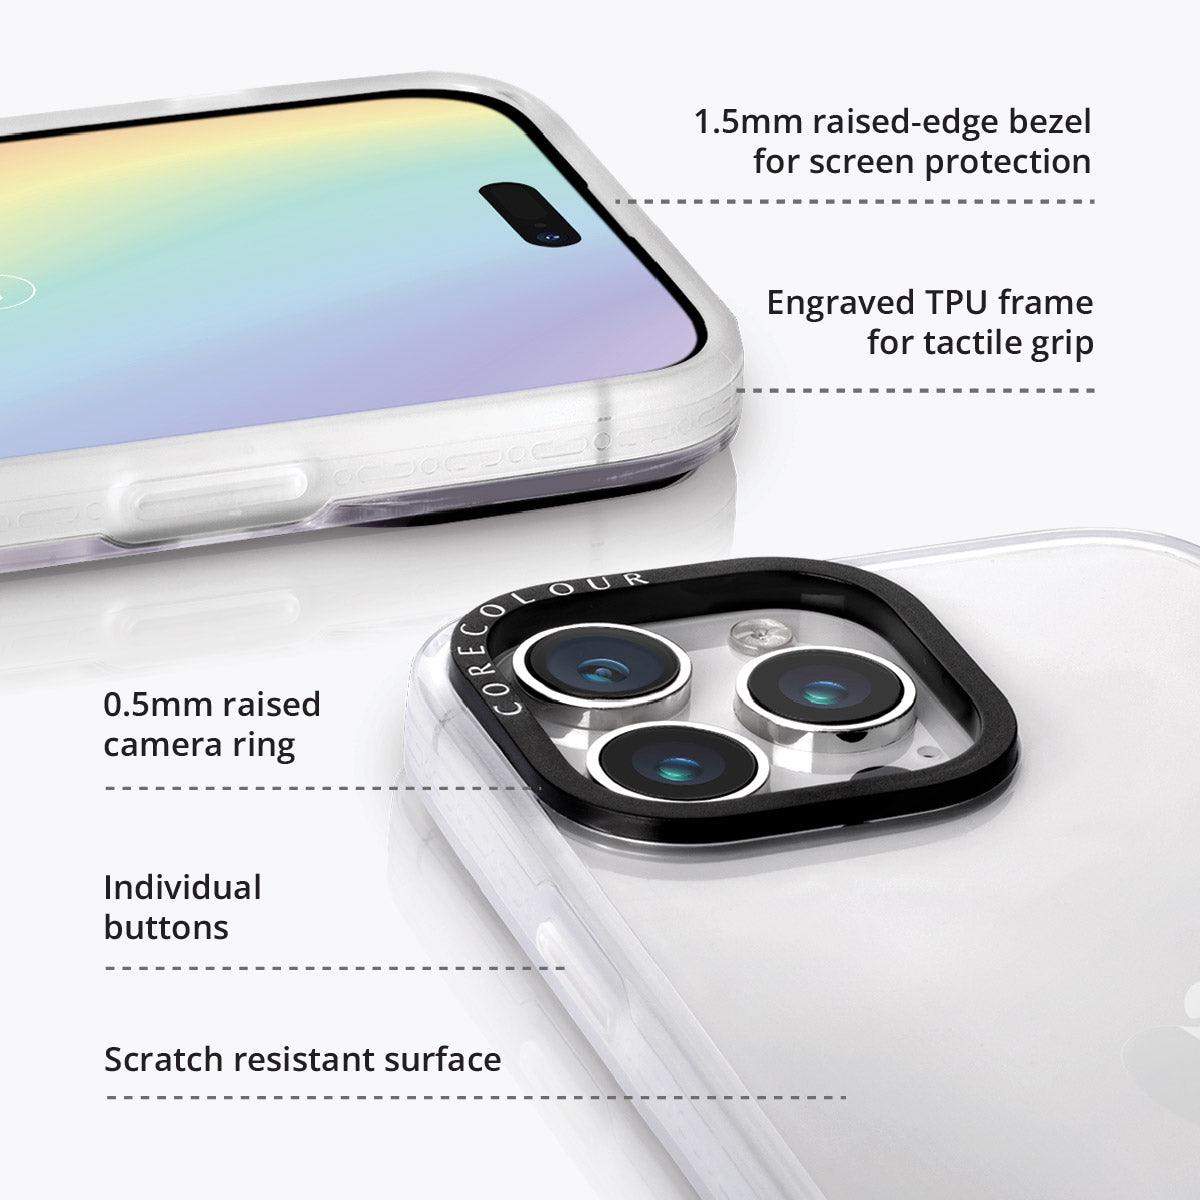 iPhone 13 Pro Max Lilac Picnic Phone Case - CORECOLOUR AU